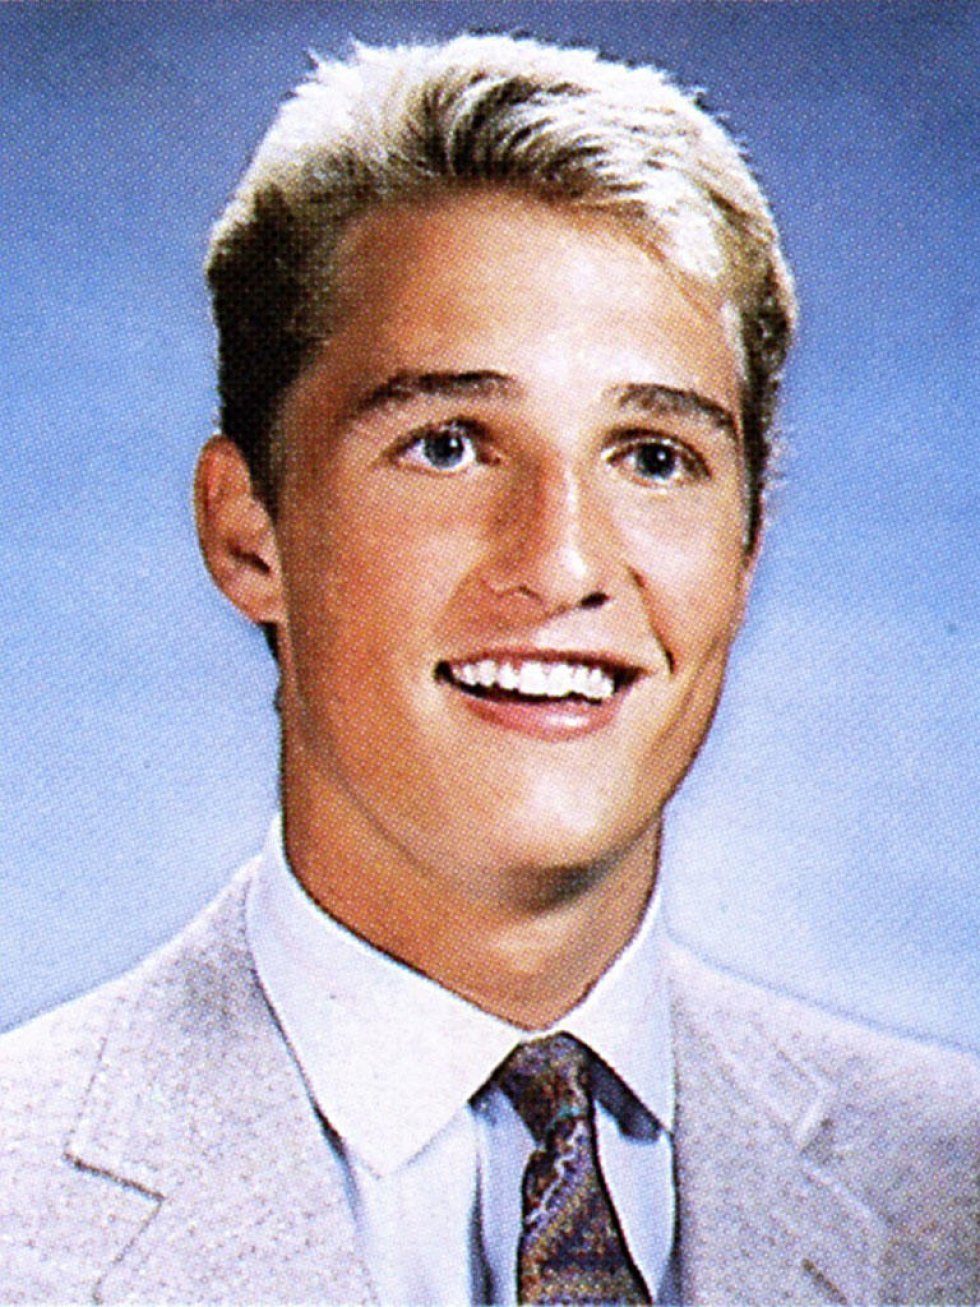 Matthew McConaughey  fra flødebolle til verdensstjerne